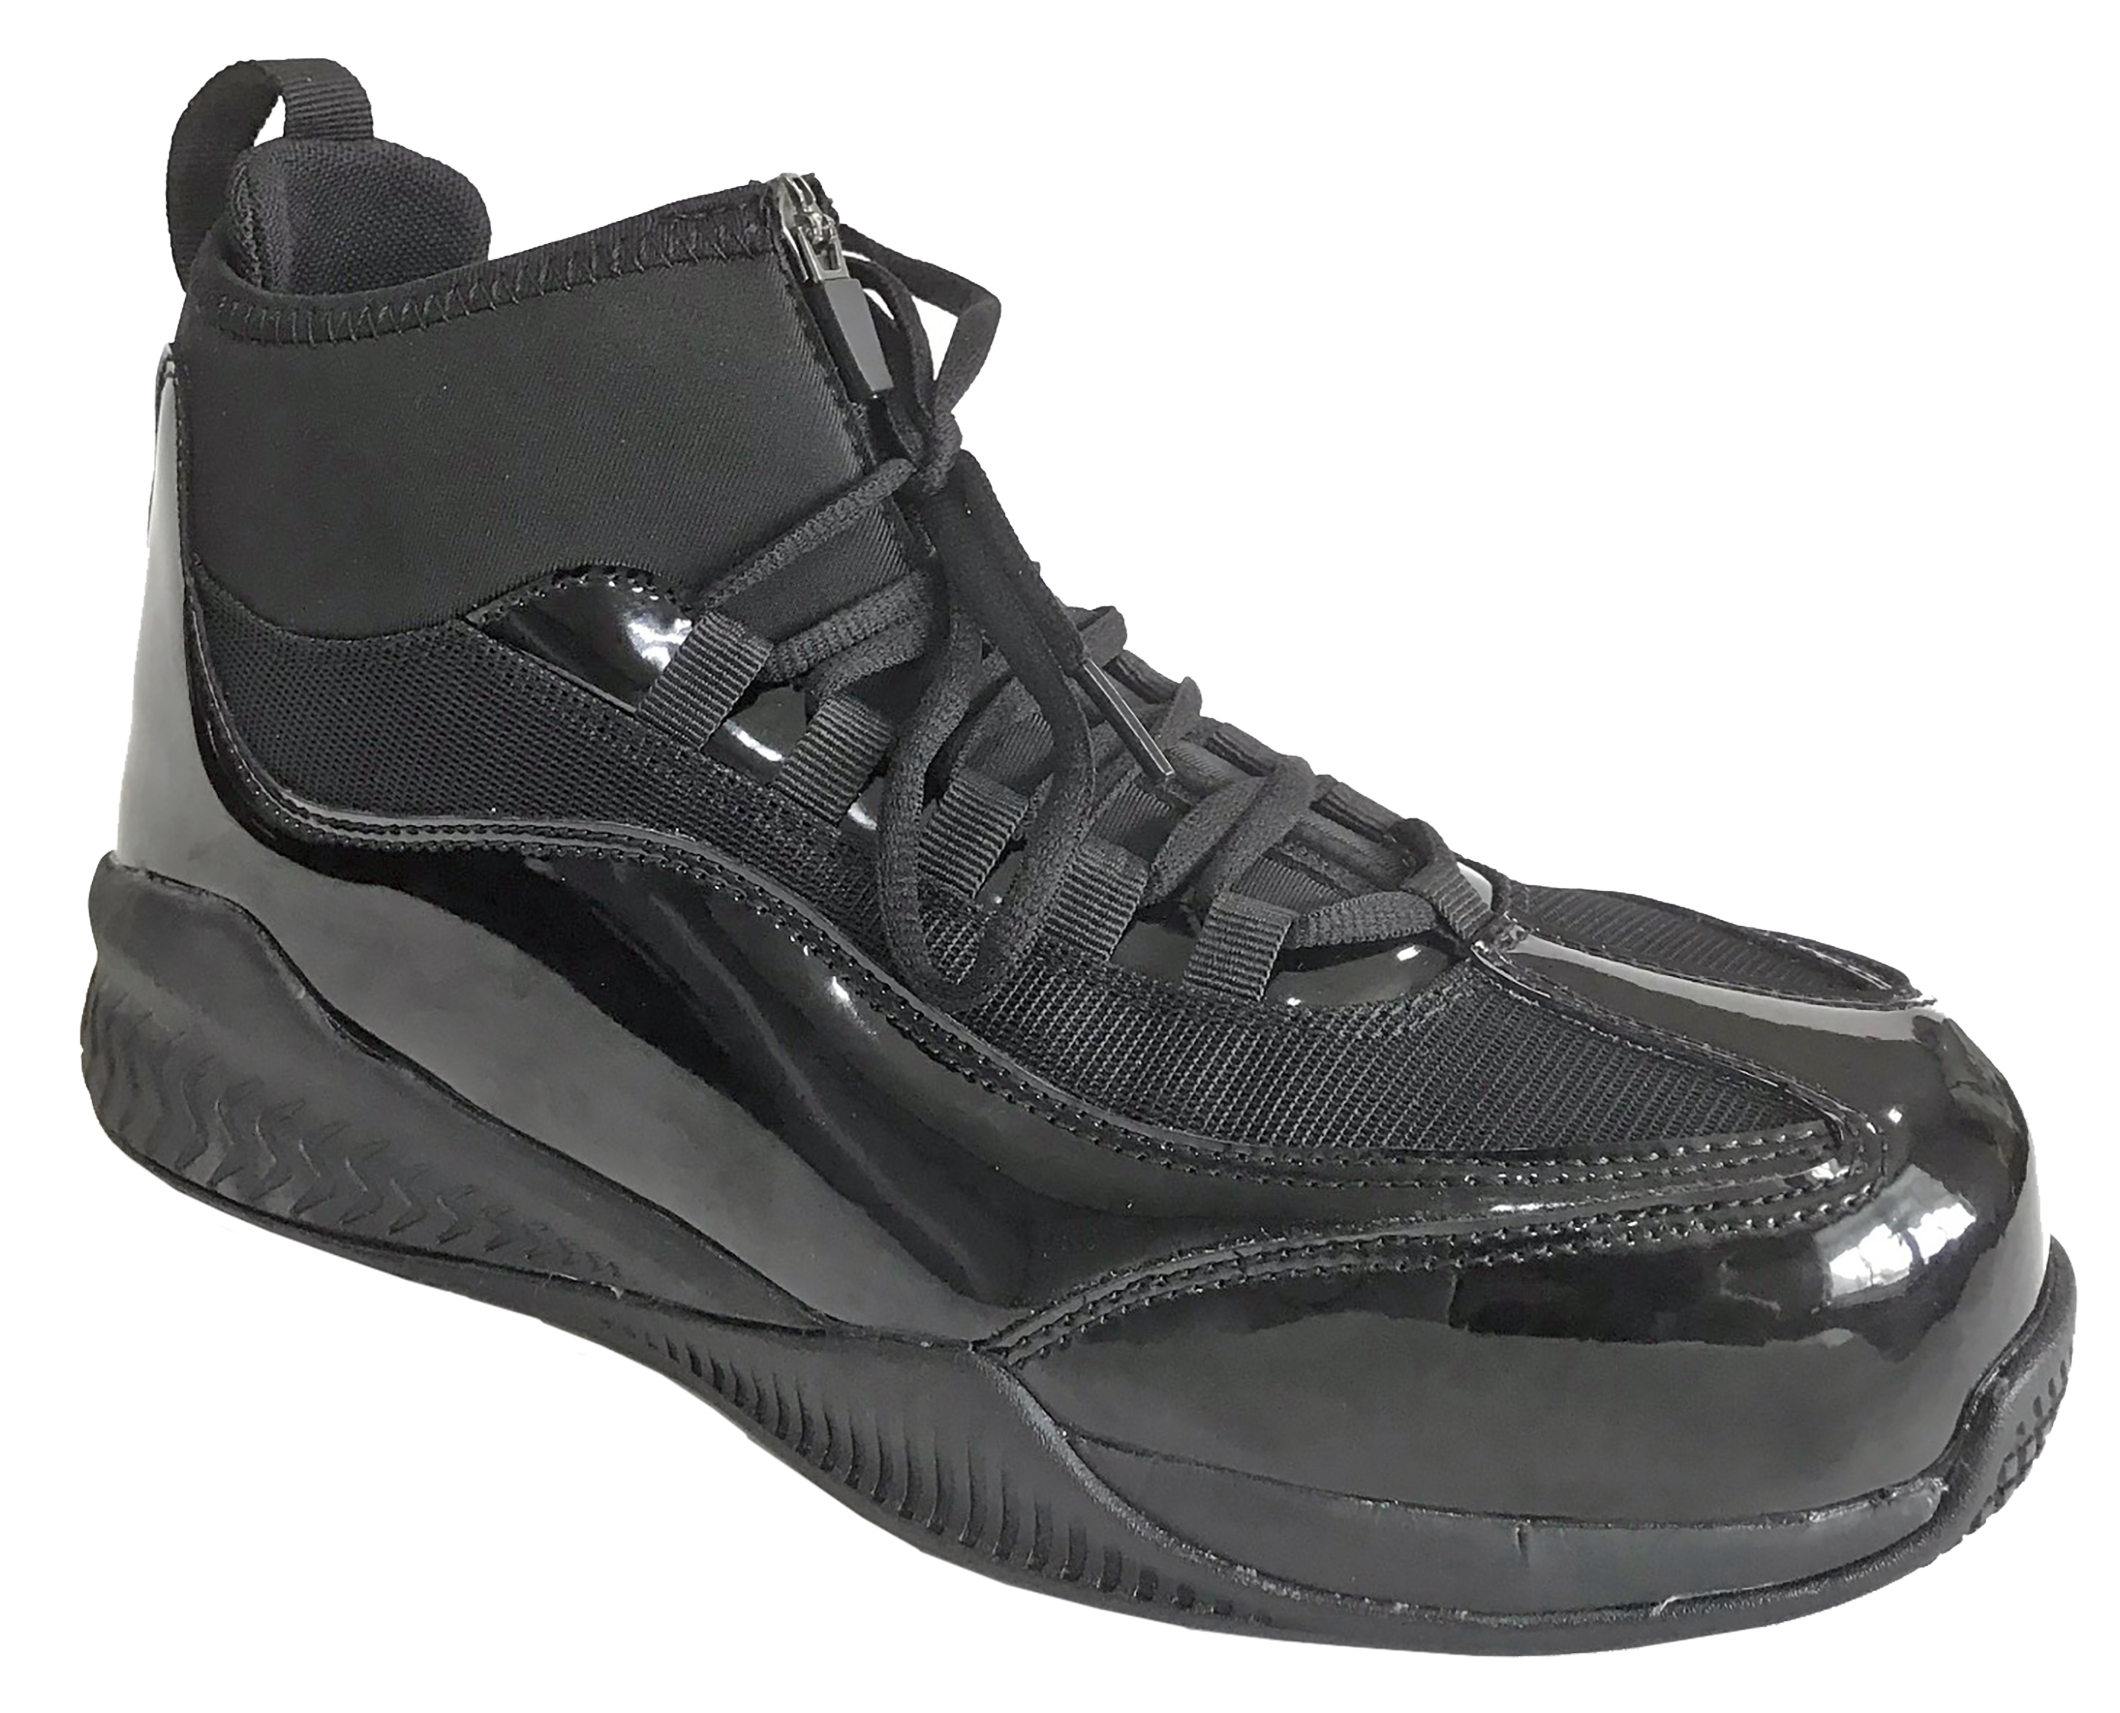 HOSS Boots Men's Full Court Composite Toe Hi Top Work Shoe Sneakers - image 2 of 3